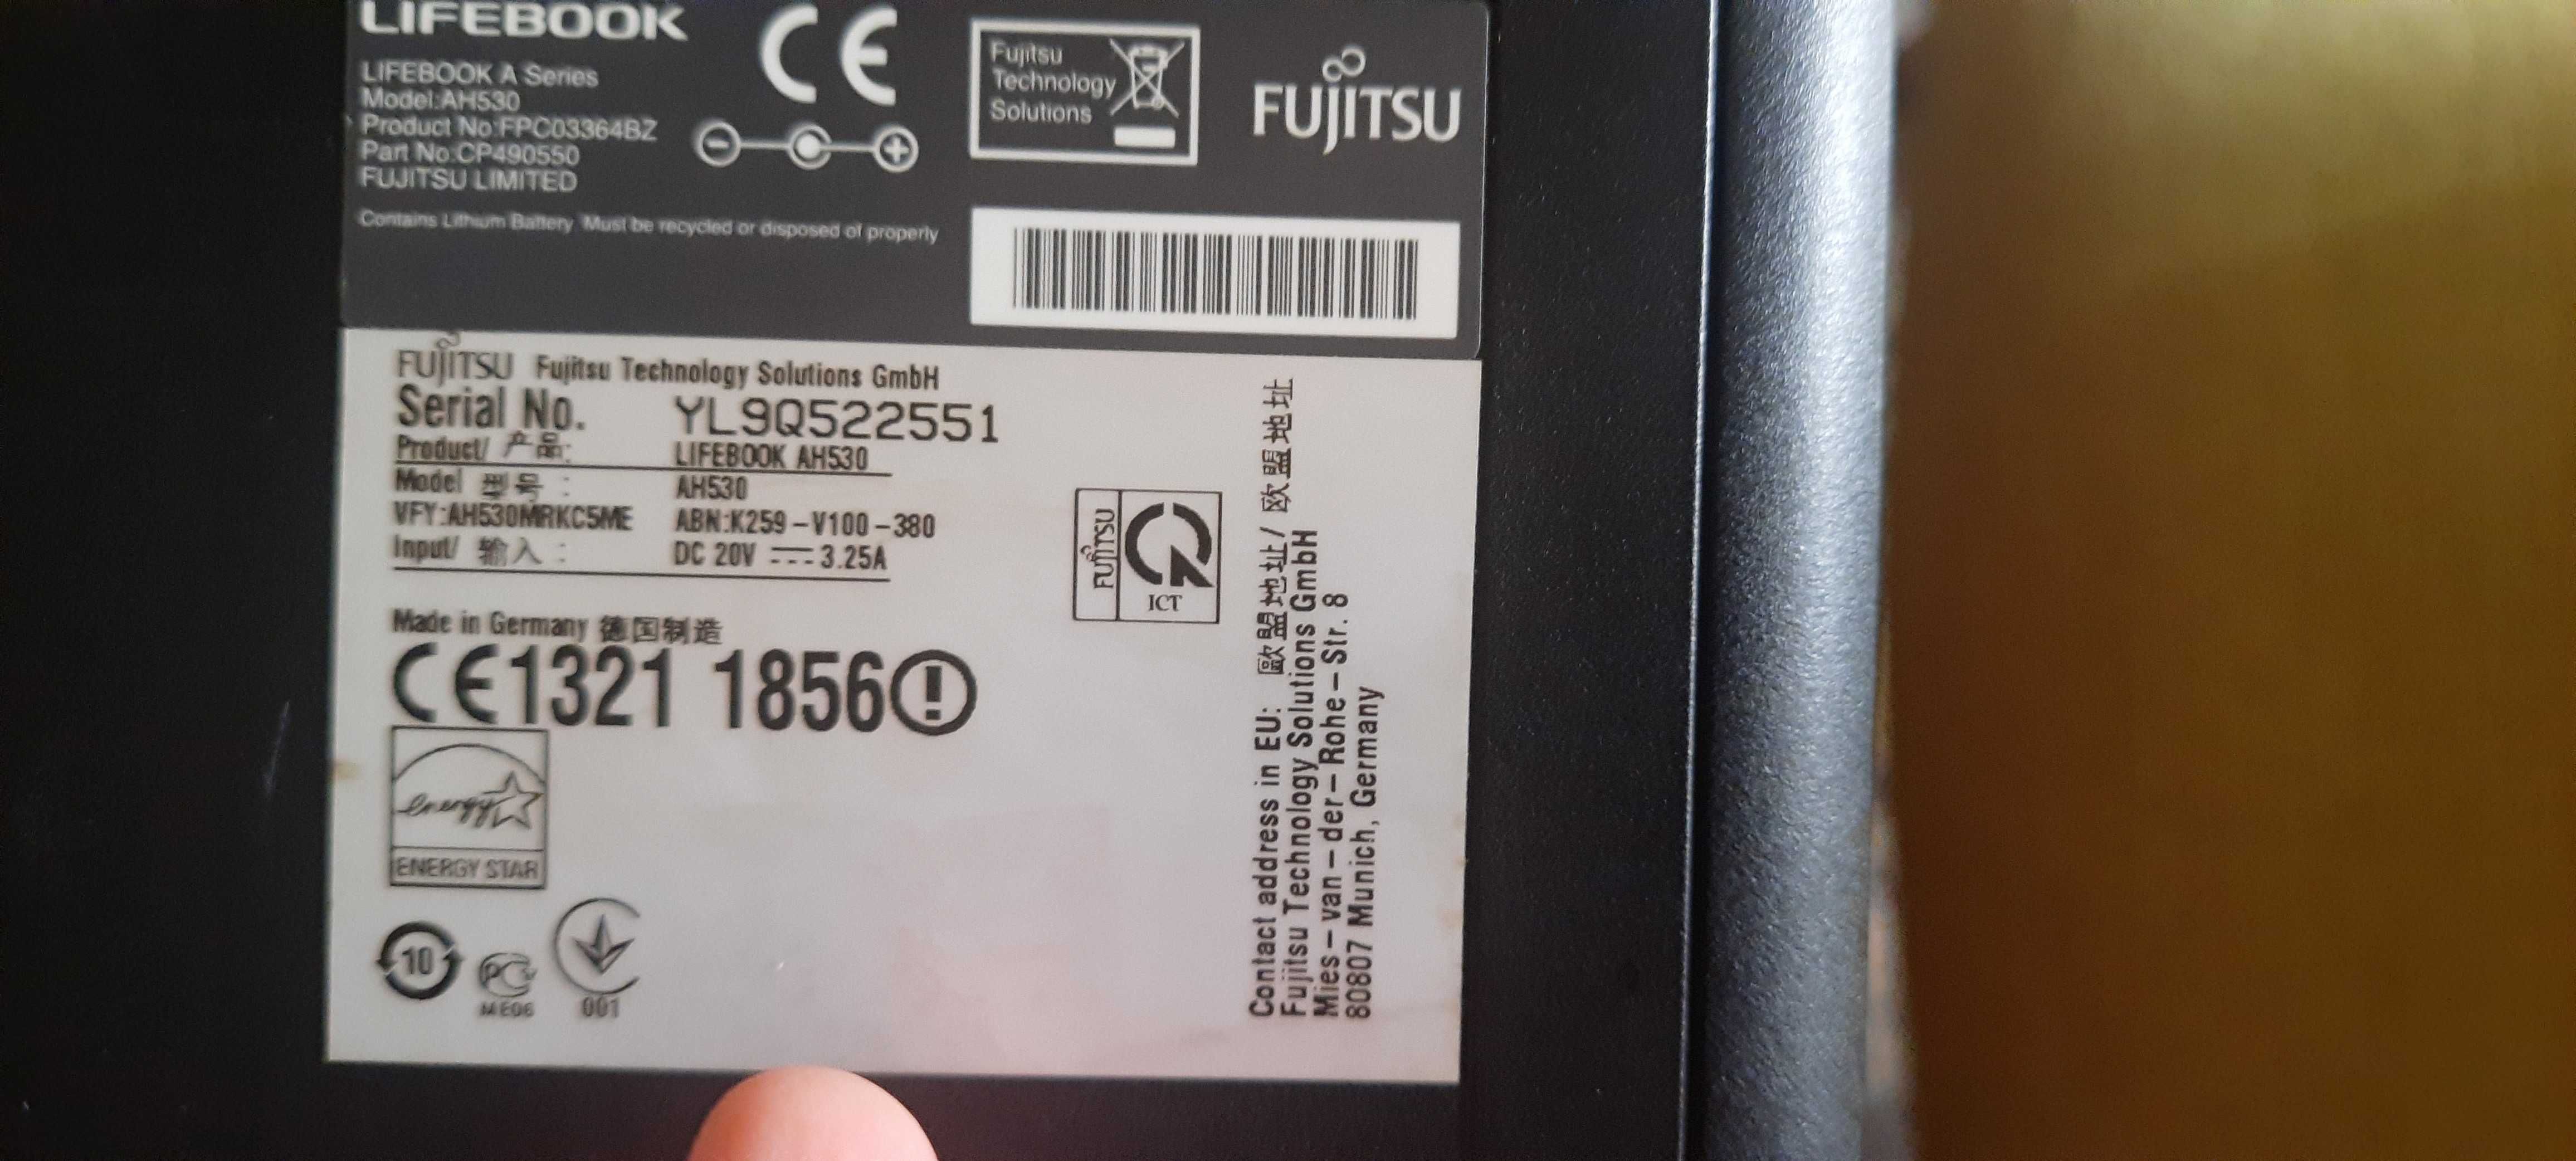 Fujitsu AH530 диагональ 15,6" сделано в Германии в идеальном состоянии